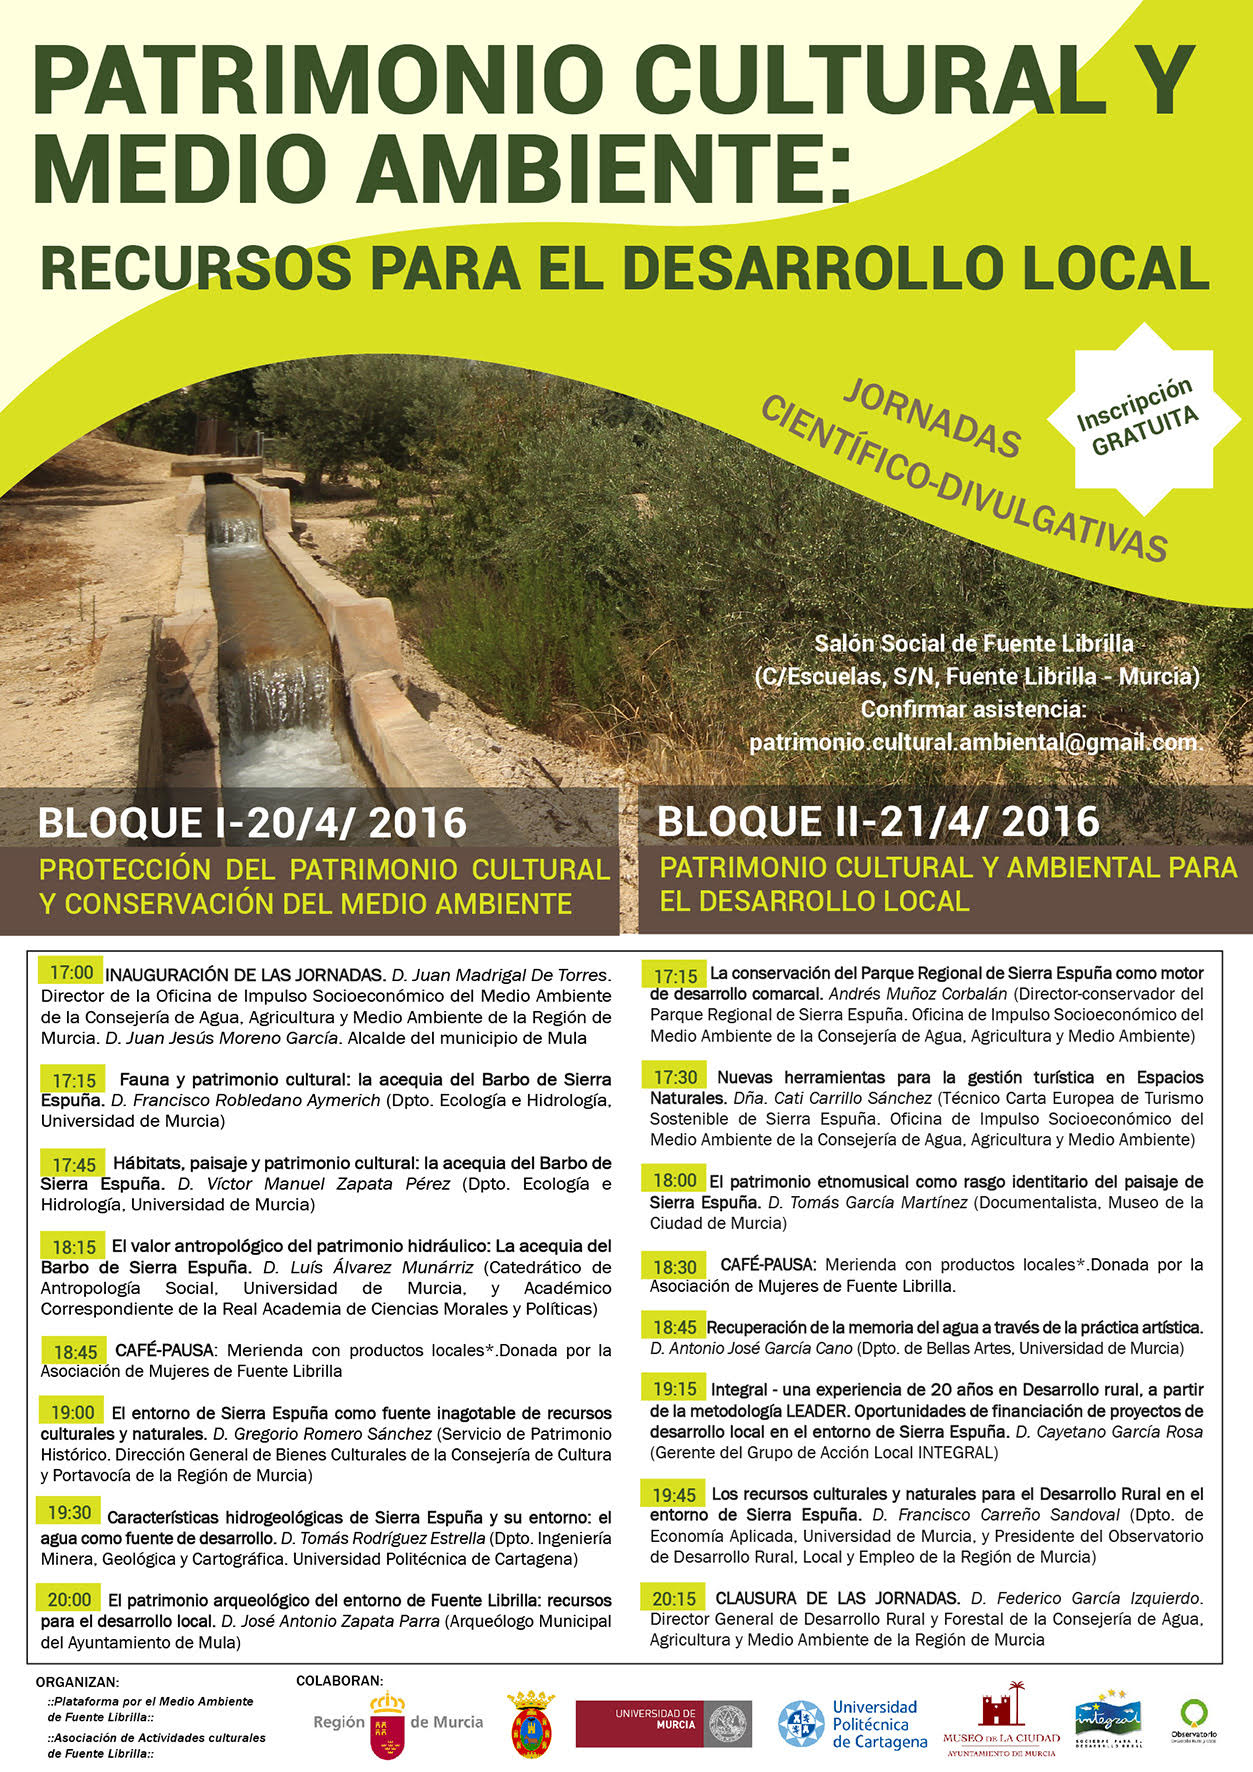 Jornadas científico - divulgativas tituladas 'Patrimonio cultural y medio ambiente: recursos para el desarrollo local'.  